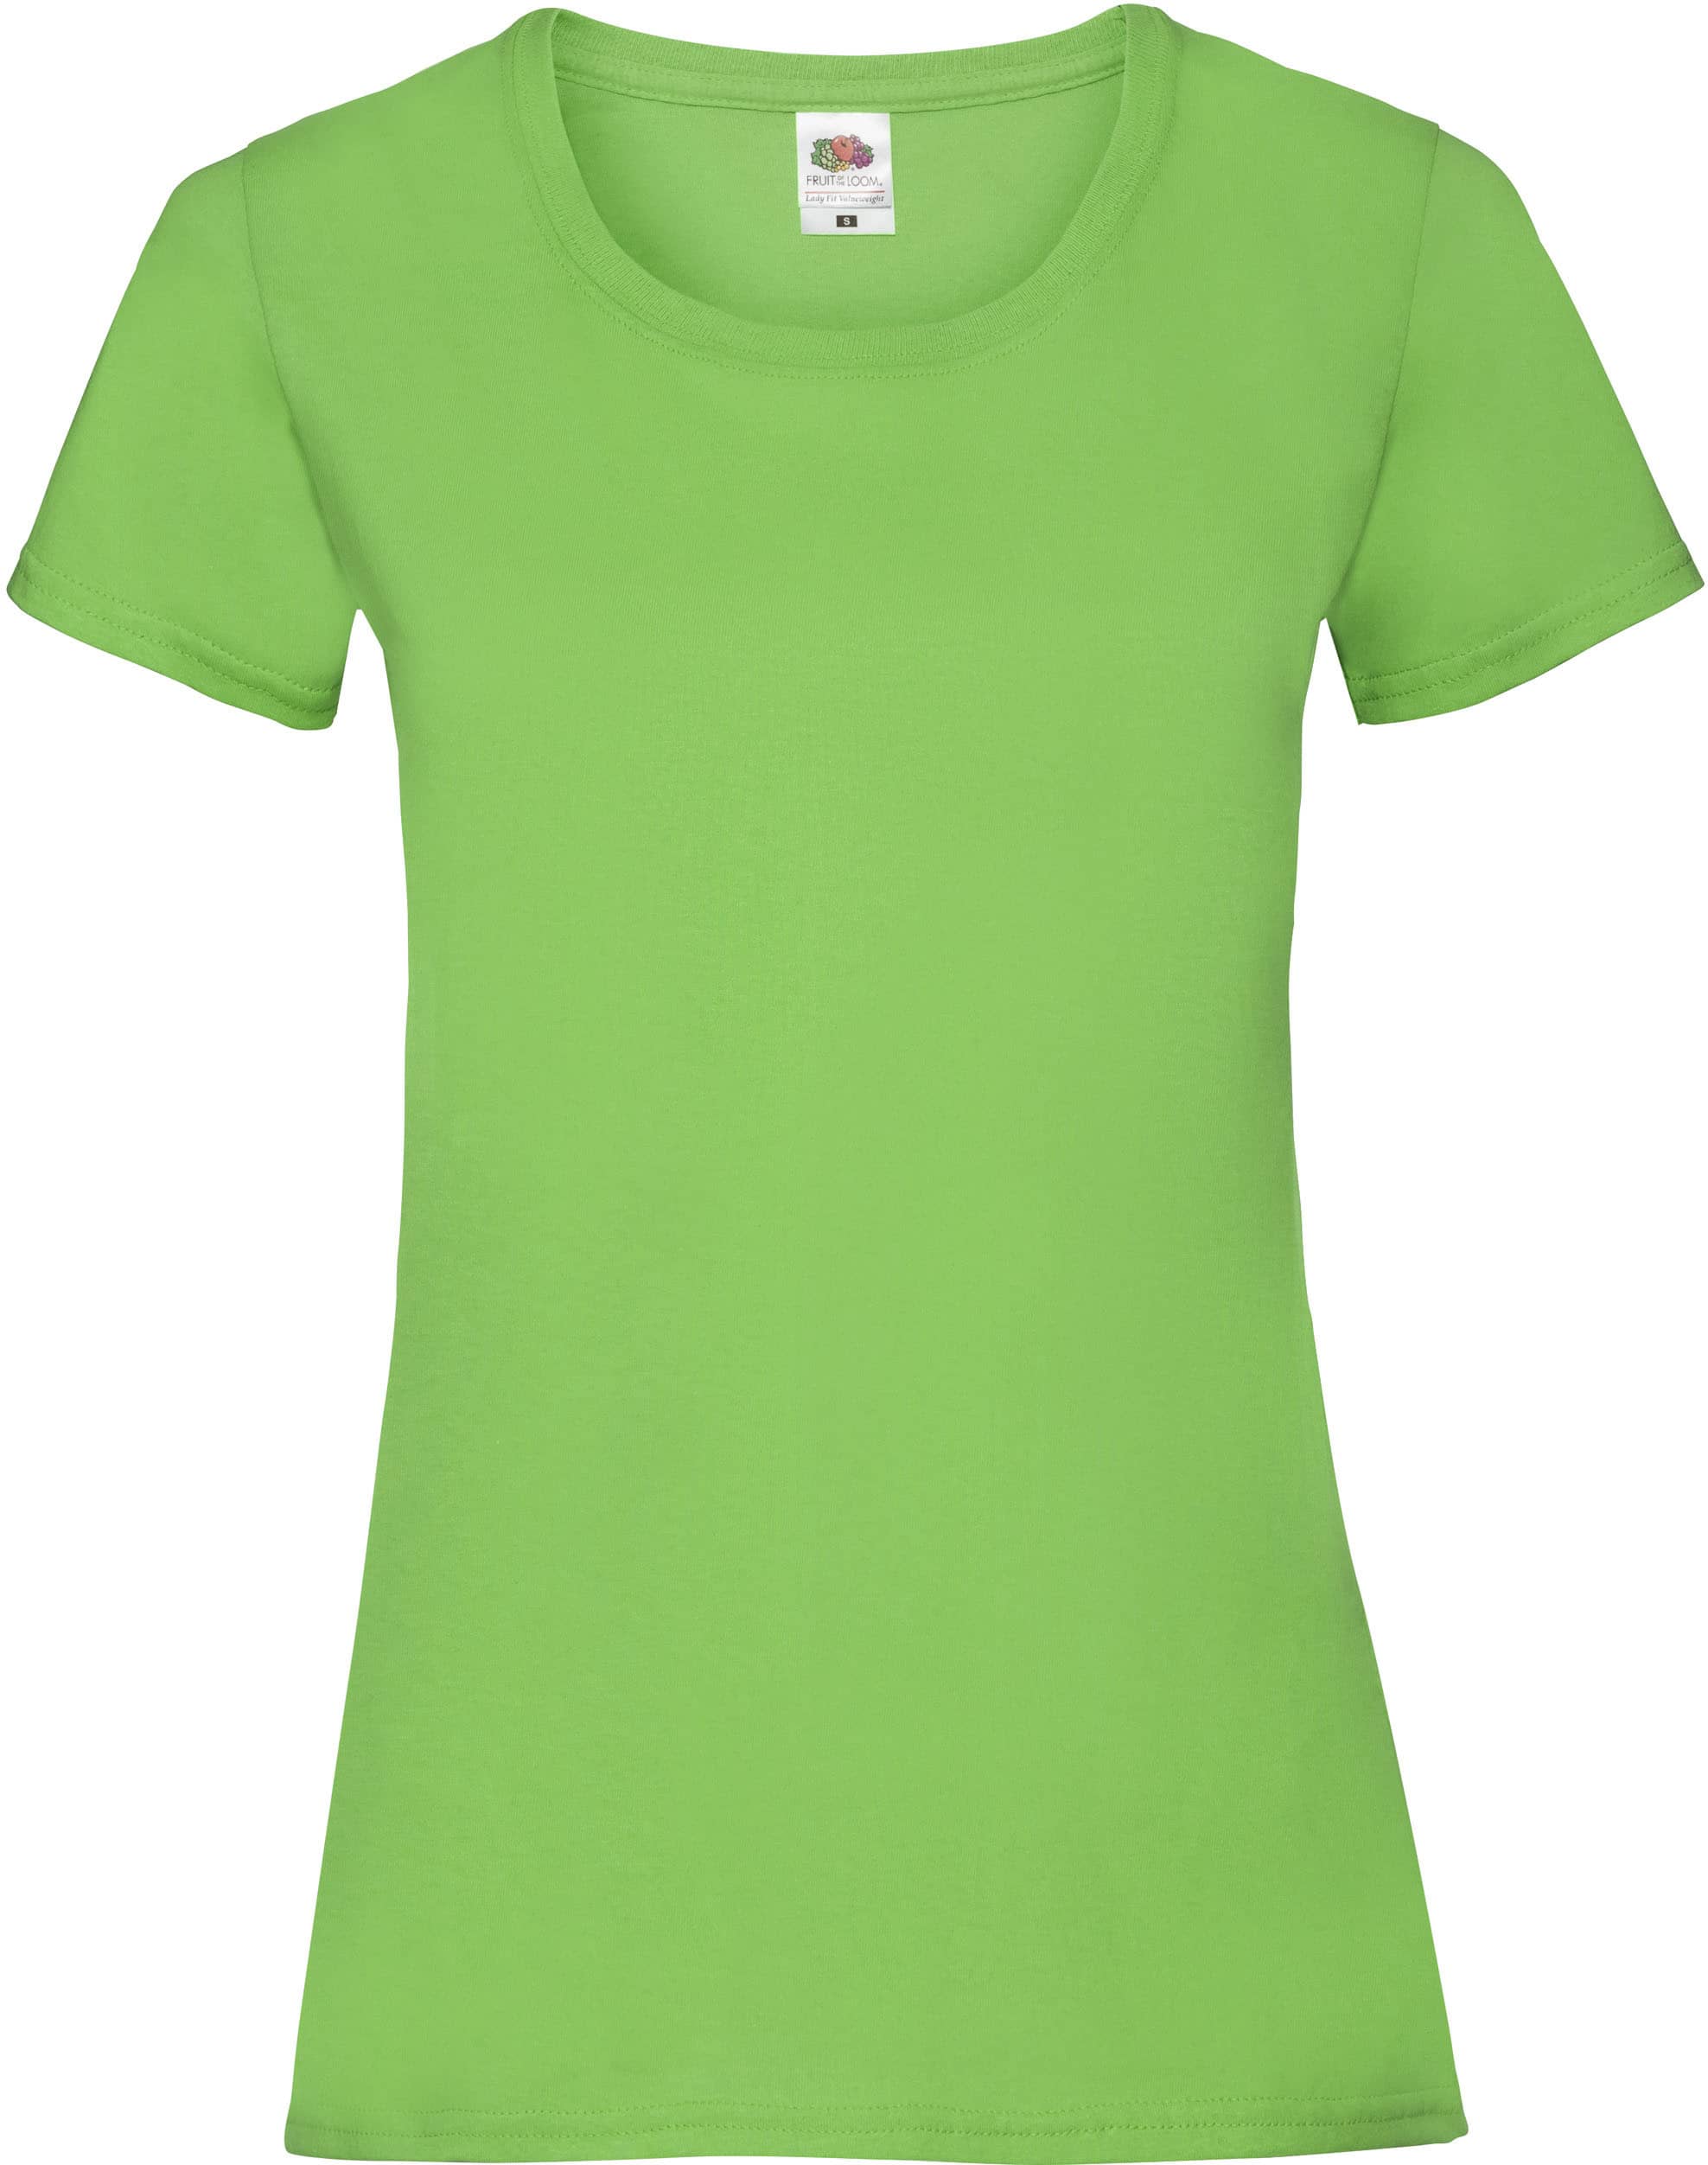 camiseta_personalizada_sc61372_verde_lima